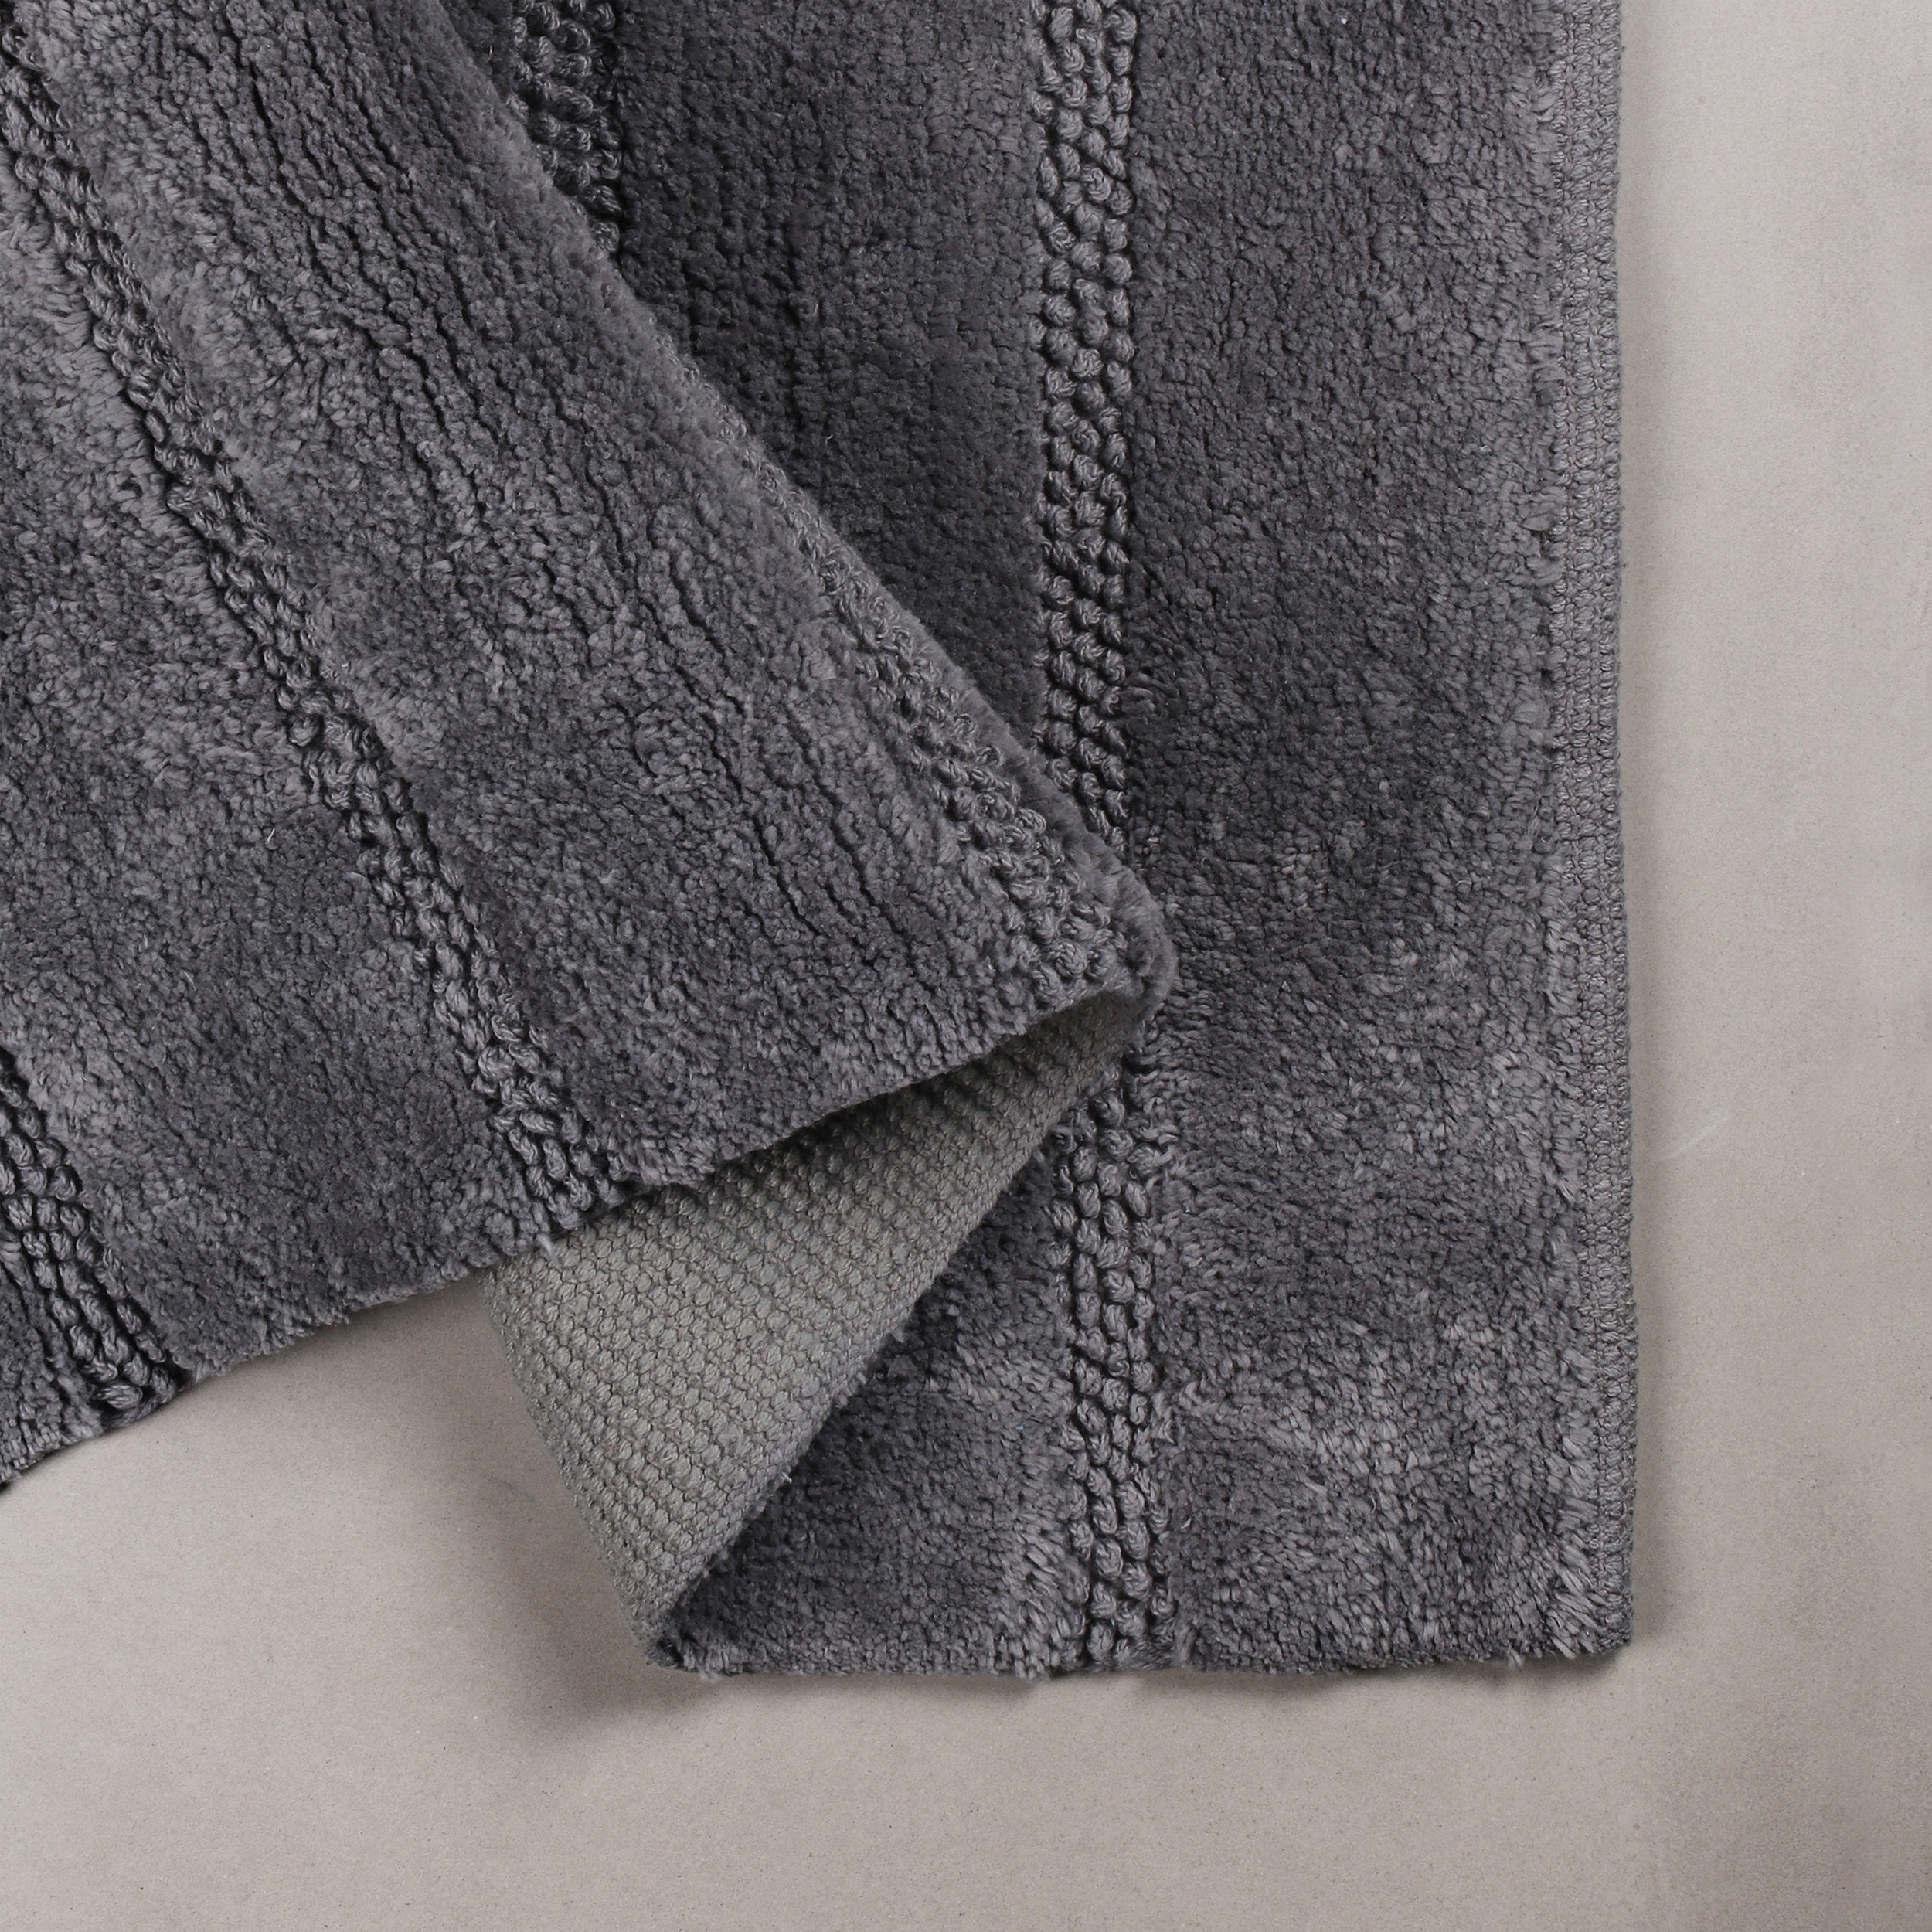 Differnz Stripes badmat geschikt voor vloerverwarming 100% katoen 45 x 75 cm grijs